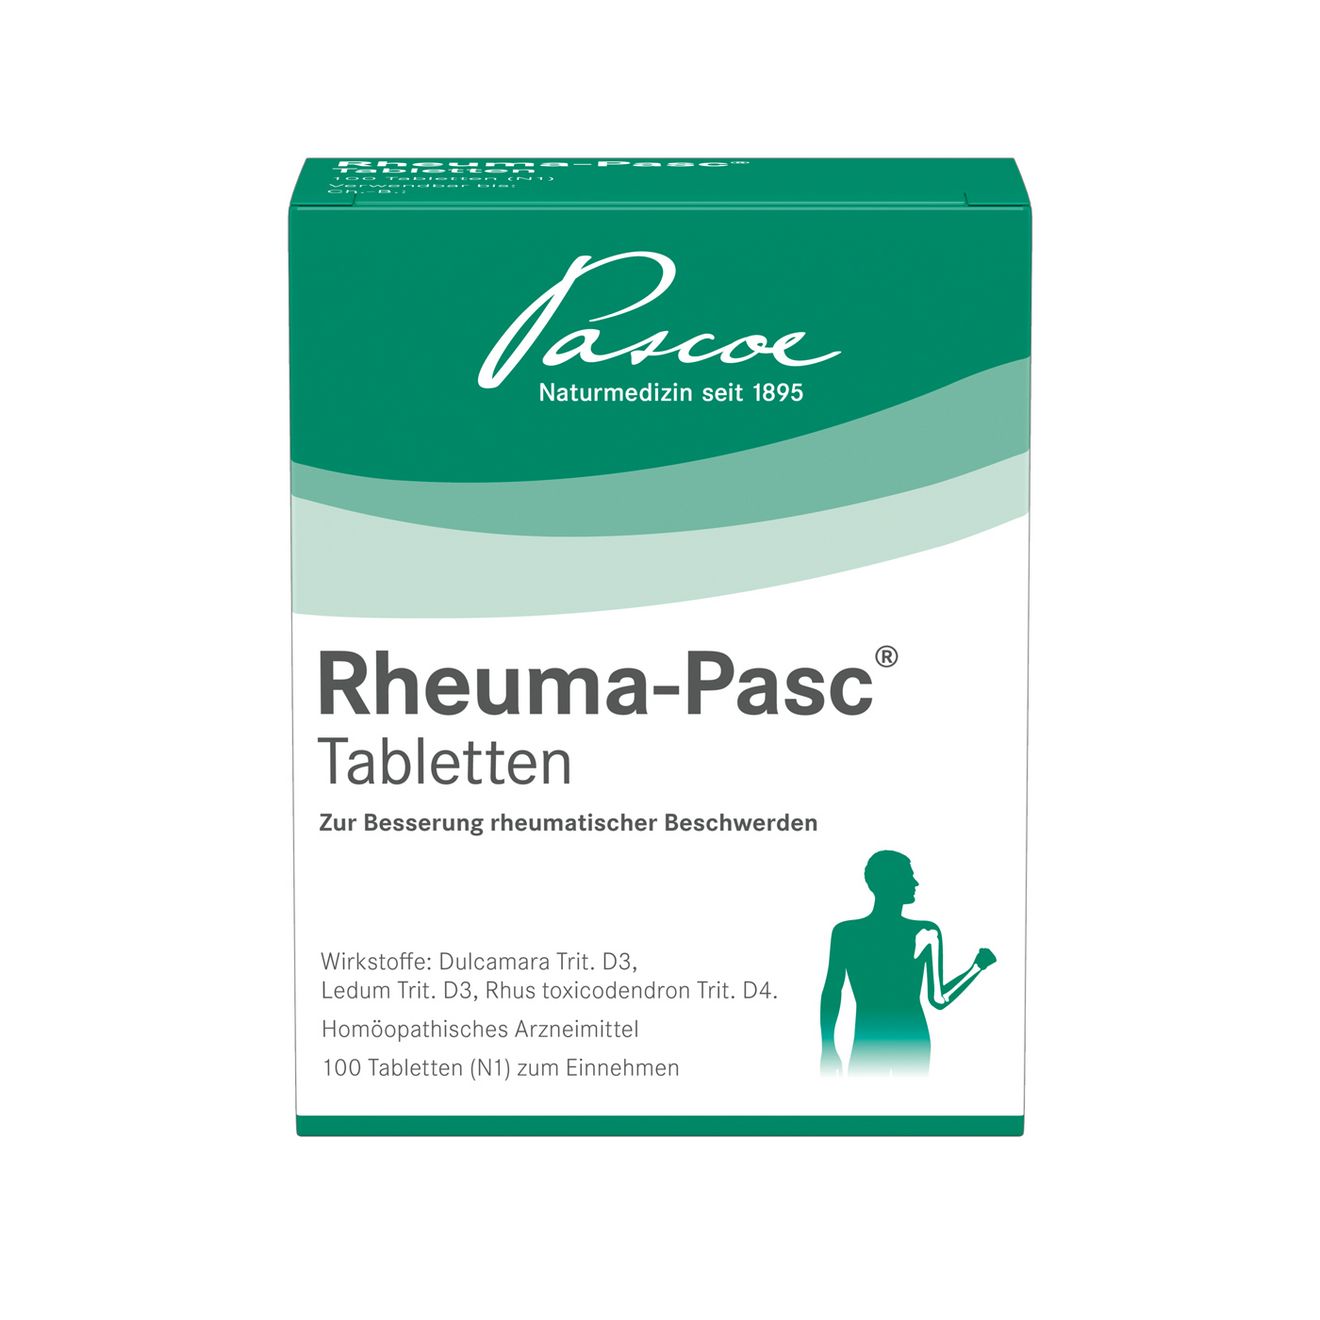 Rheuma-Pasc TablettenRheuma-Pasc Tabletten